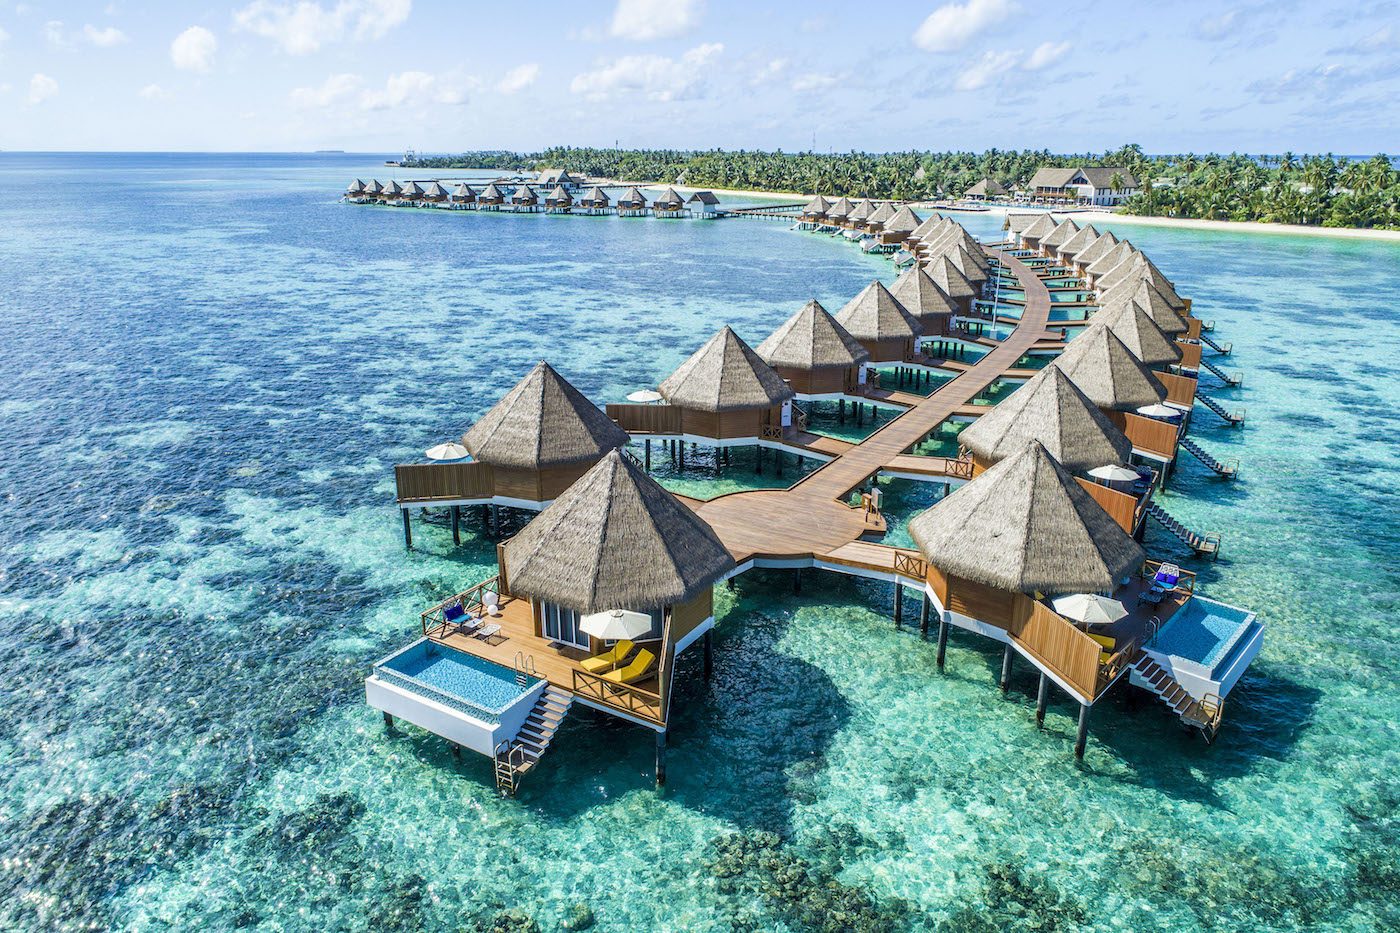 Mercure Kooddoo Maldives Opens - Suma - Explore Asia